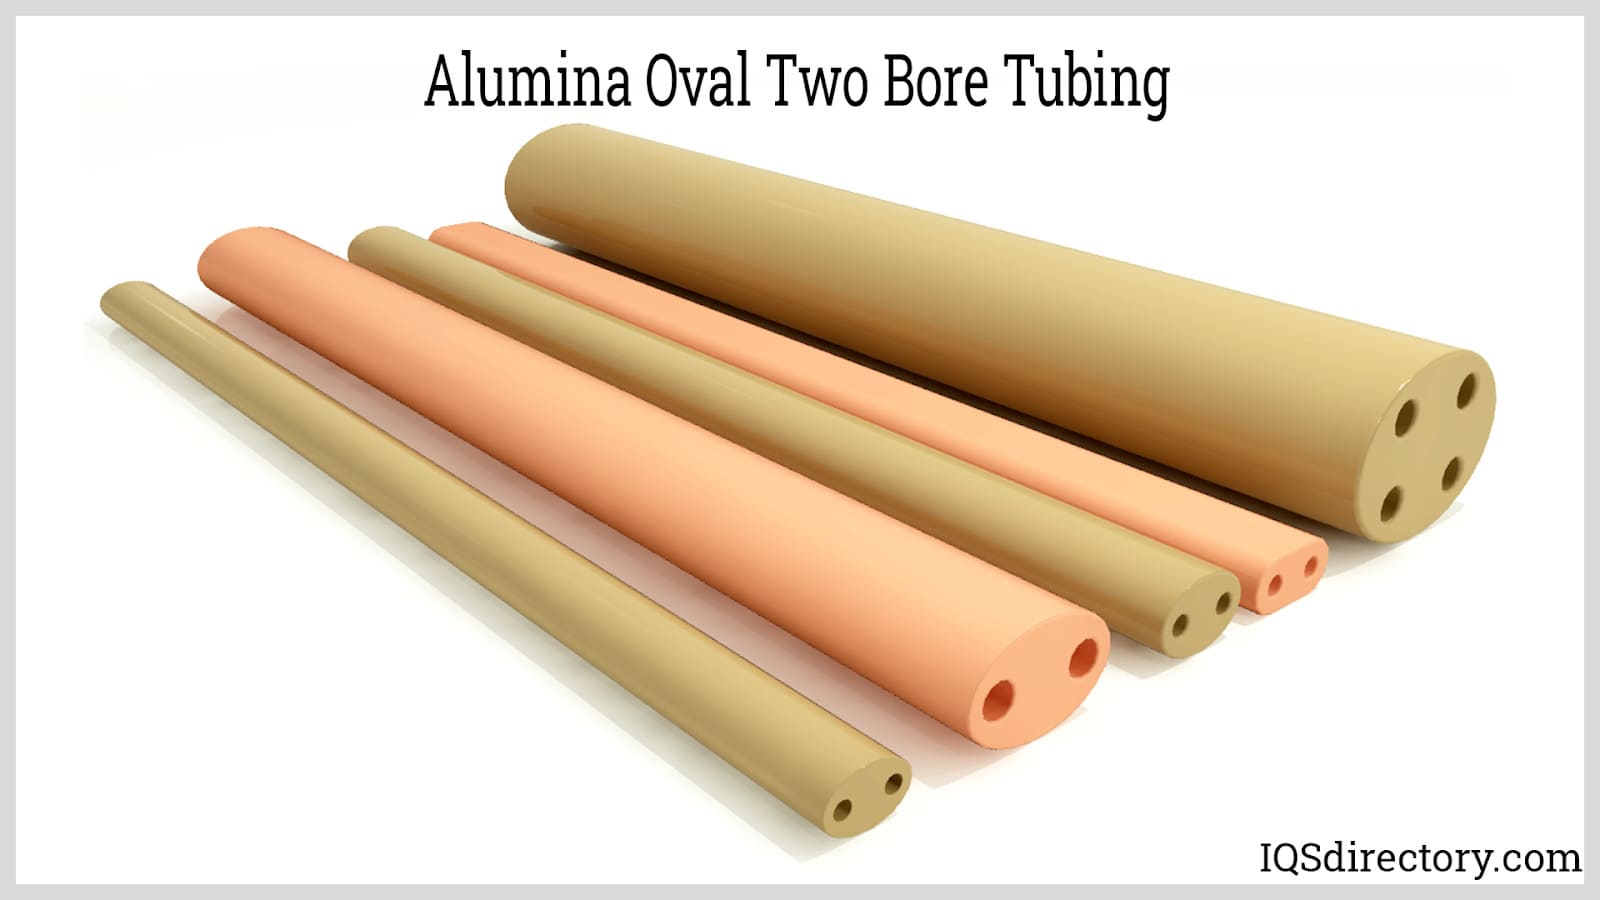 Alumina Oval Two Bore Tubing